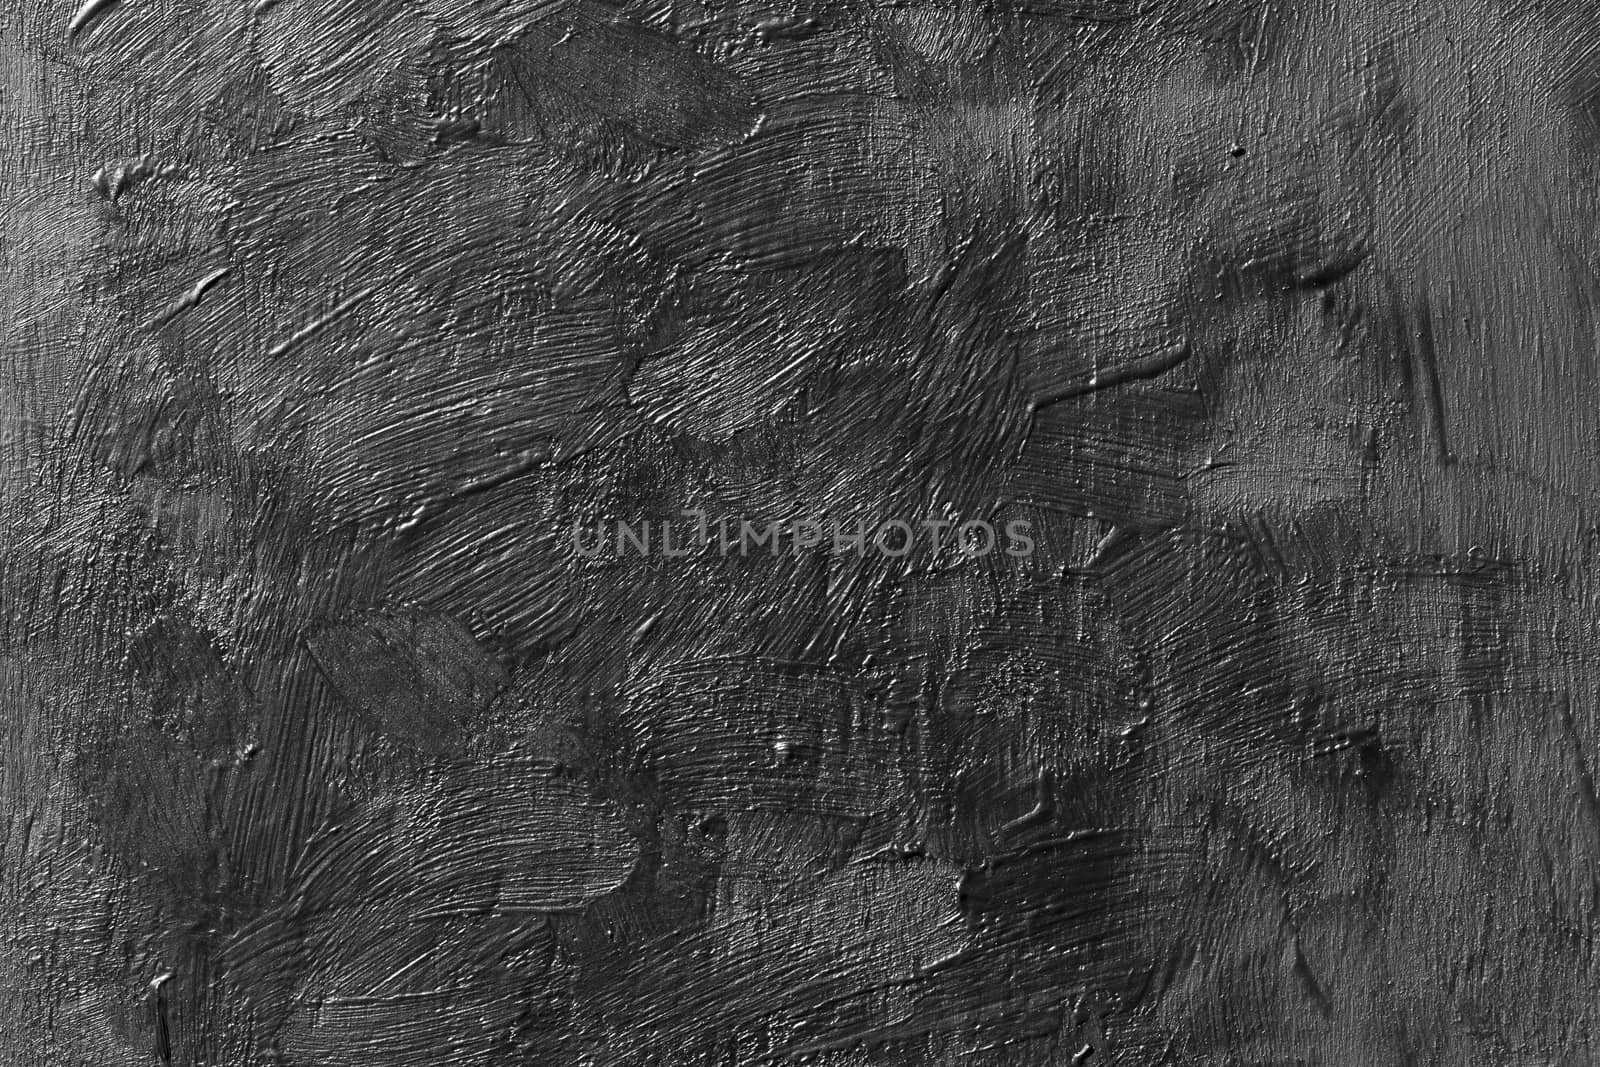 Grunge vintage dark background cement texture wall